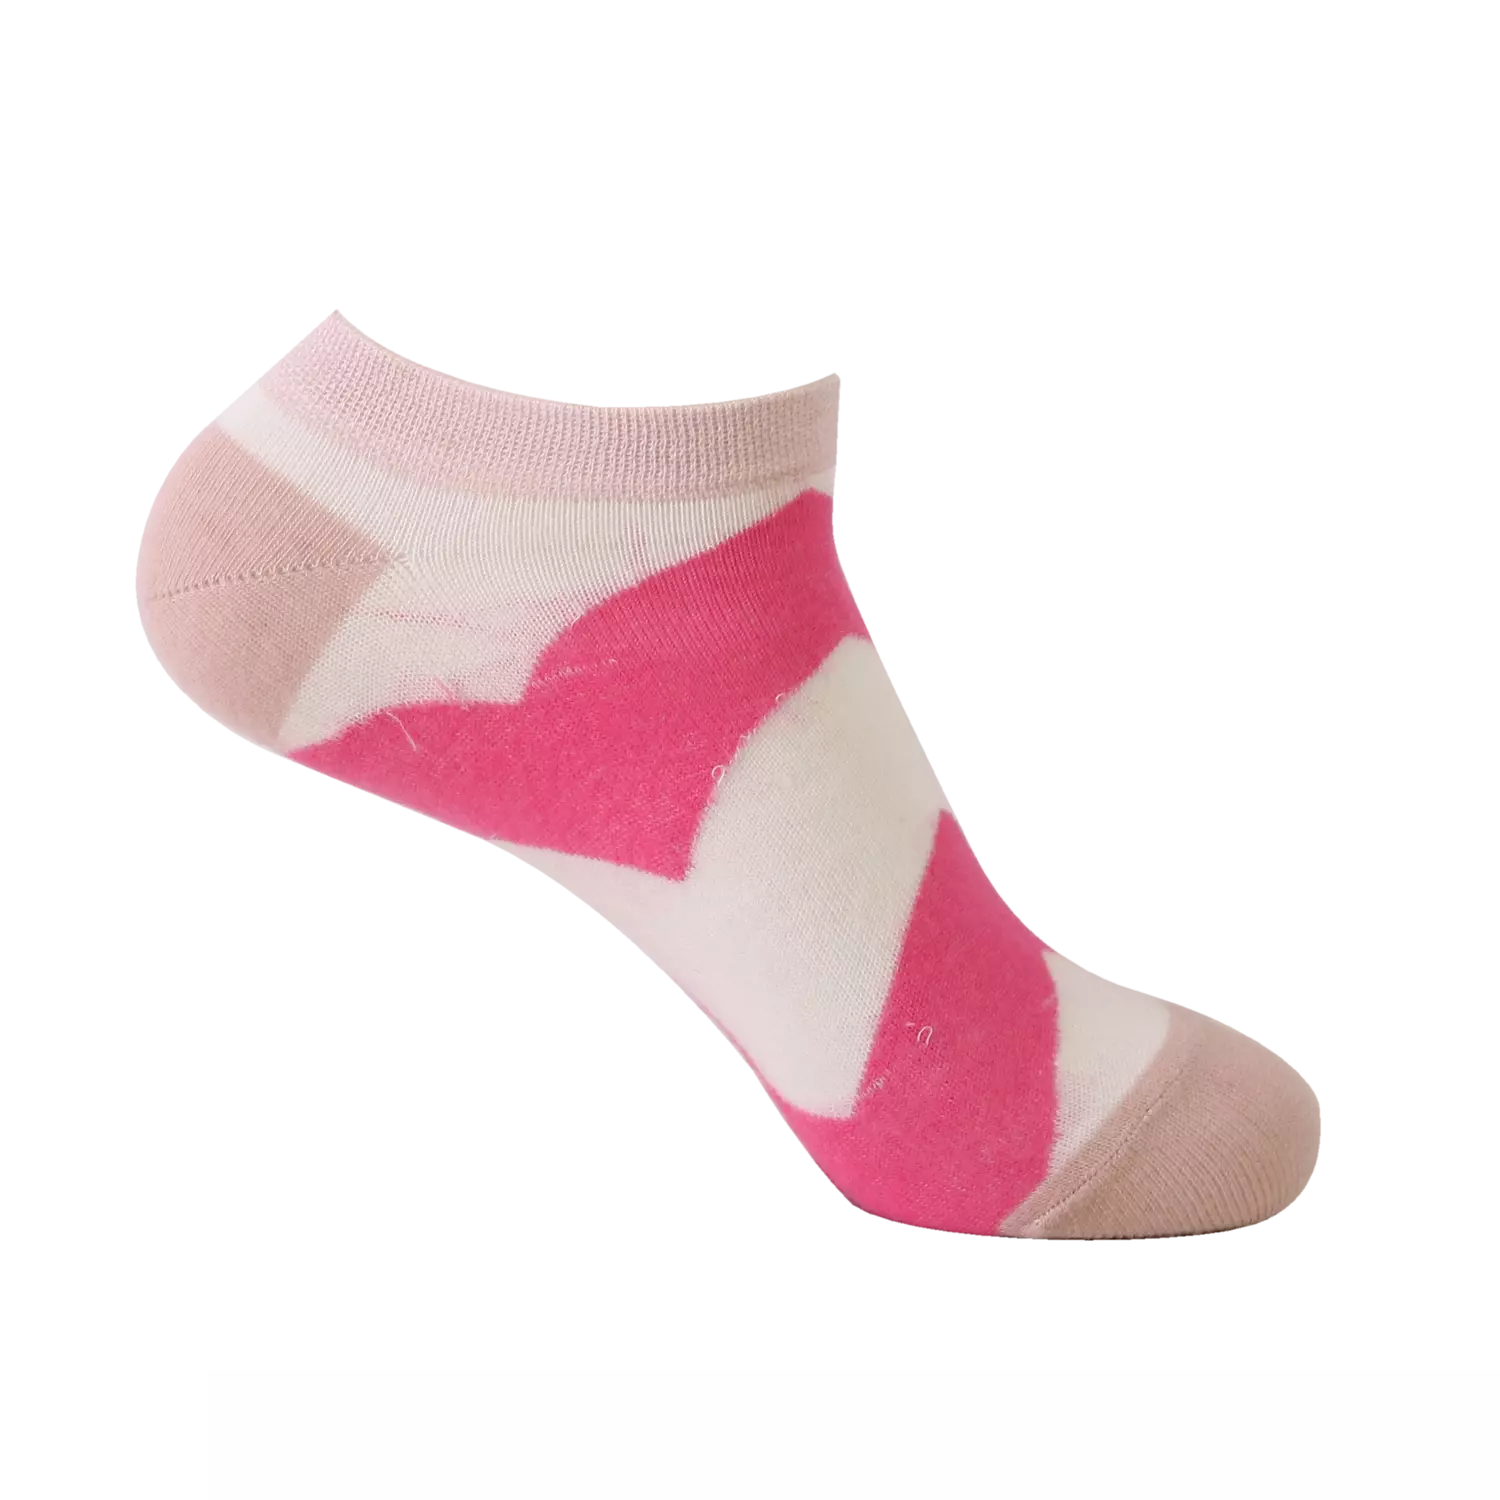 Viva Lowcut Socks for women's hover image